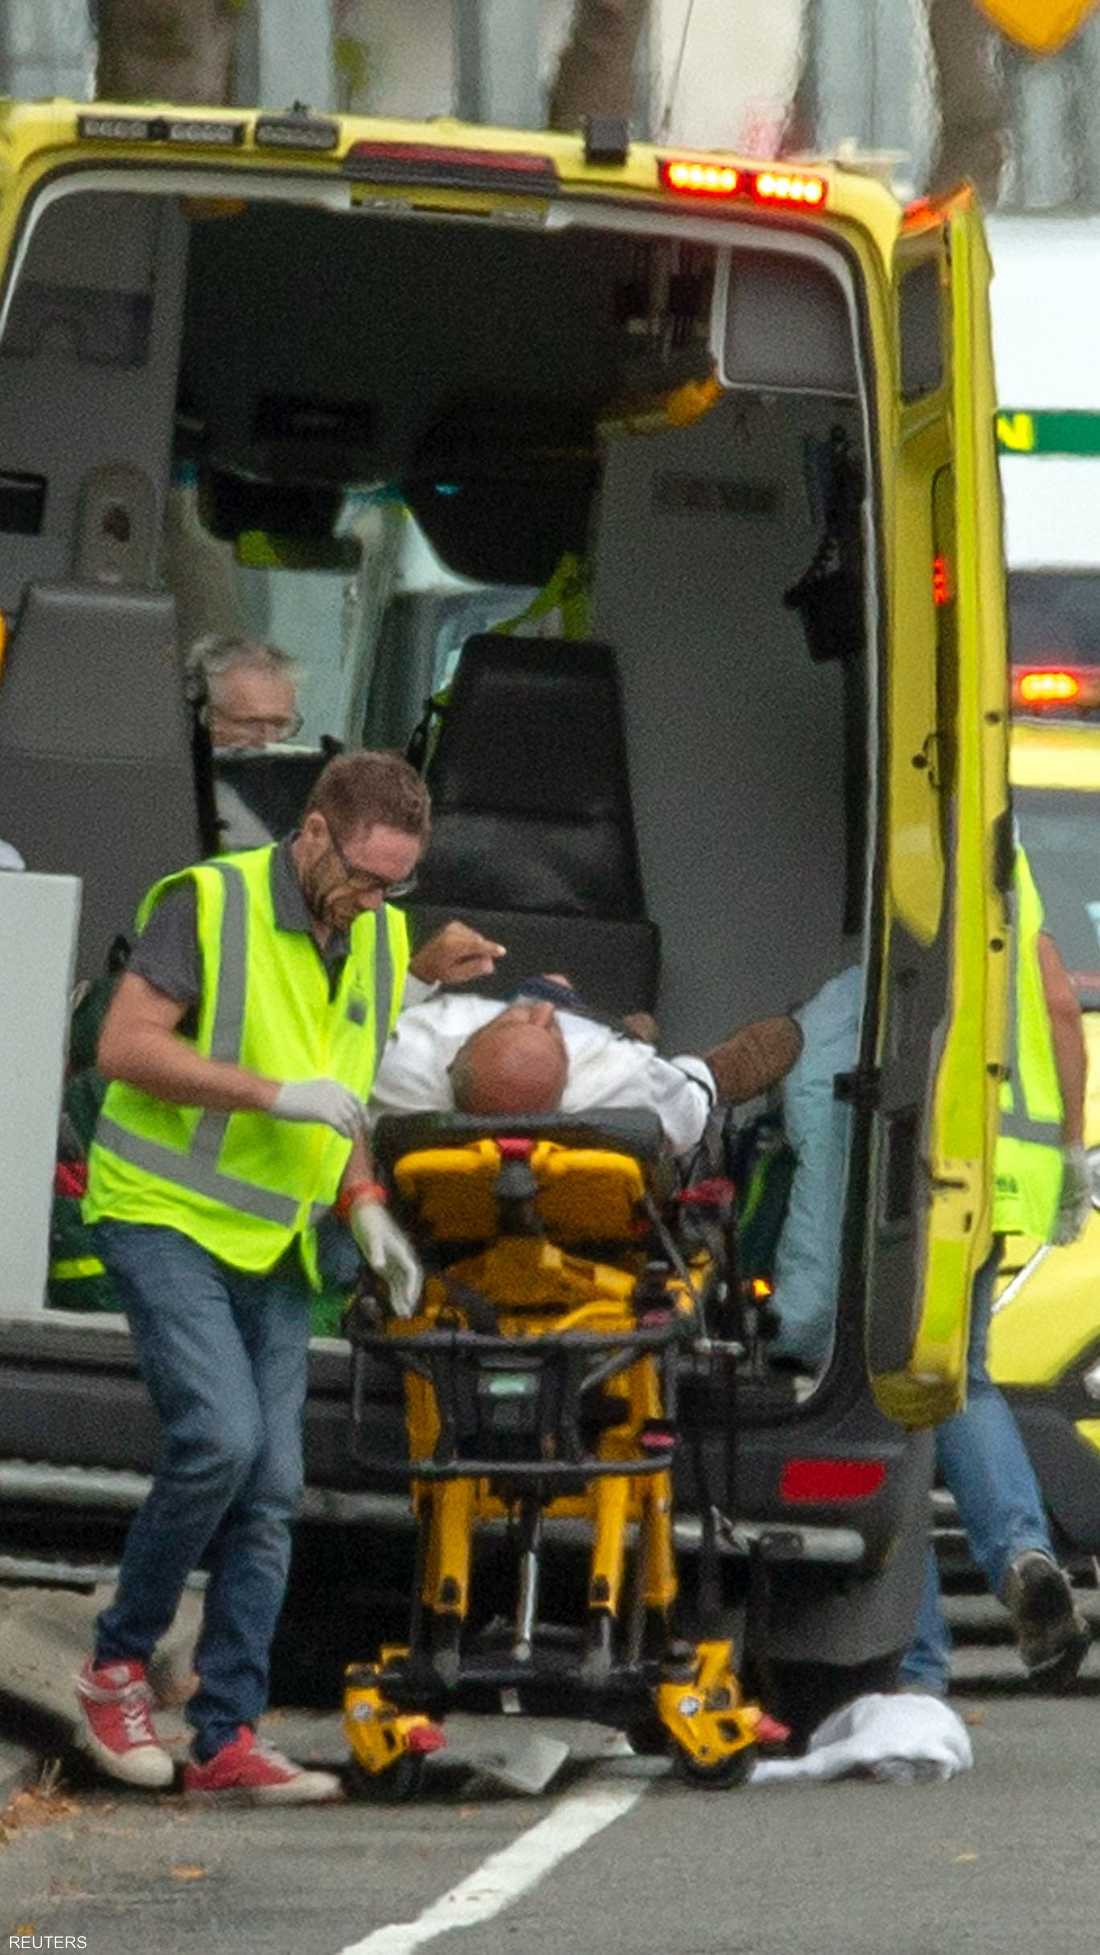 بث الهجوم، الذي وقع بمسجدين بمدينة كرايست تشيرش النيوزيلندية وخلف مقتل وإصابة العشرات، الرعب في نفوس المواطنين والمواطنات.